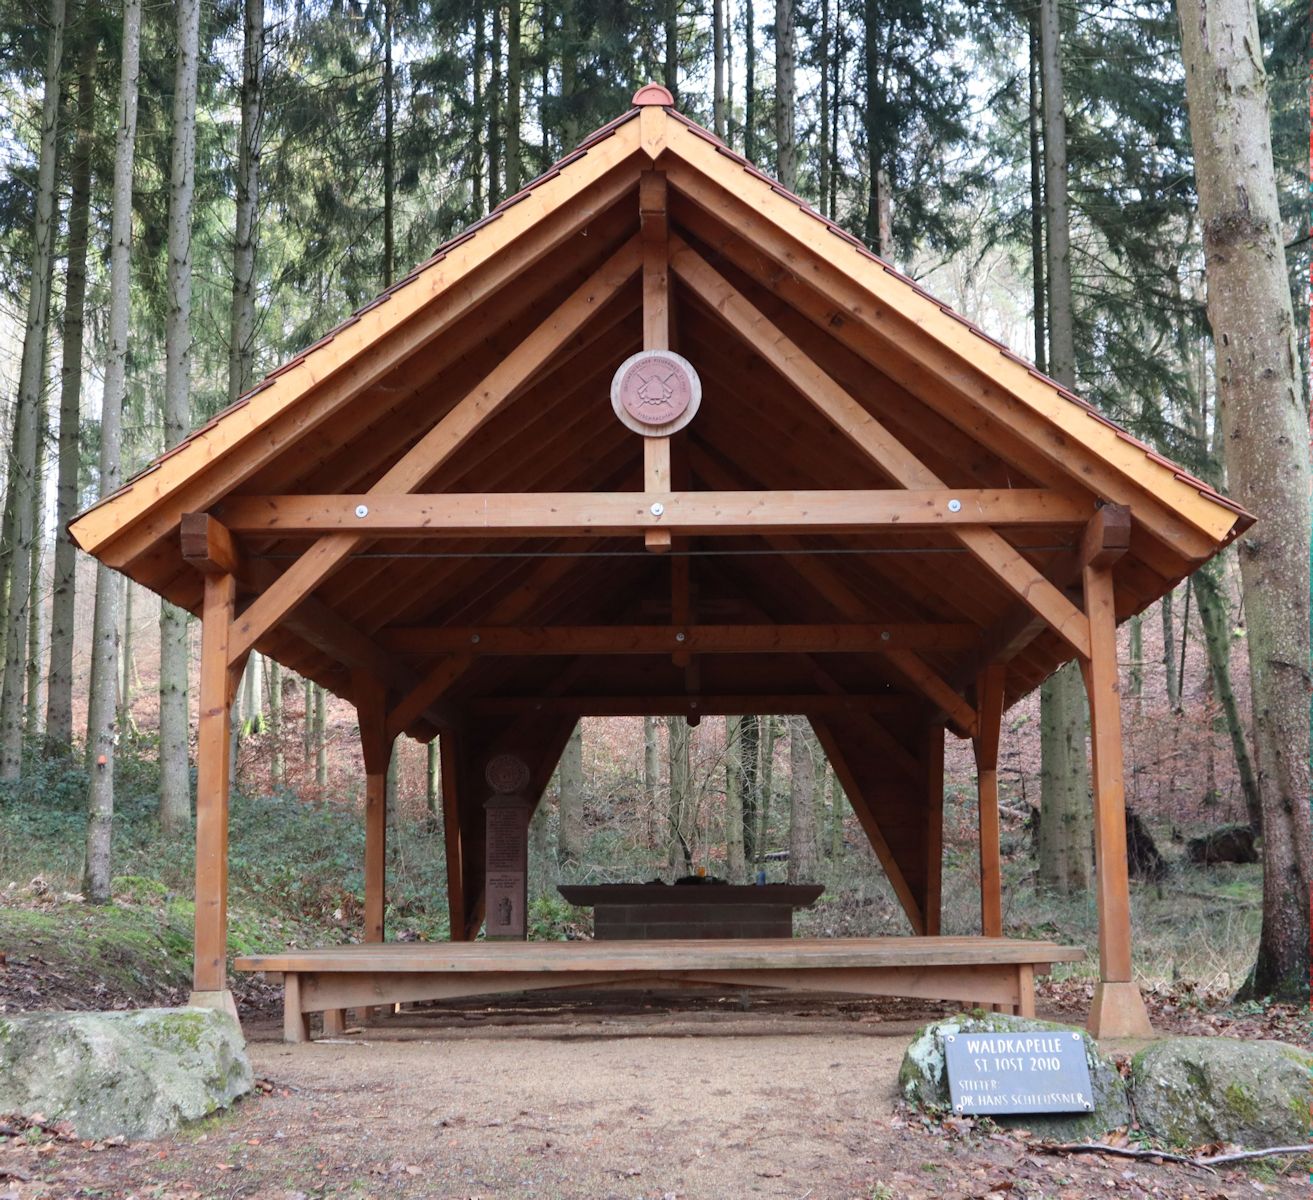 Jodokus-Kapelle in Fischbachtal im Odenwald